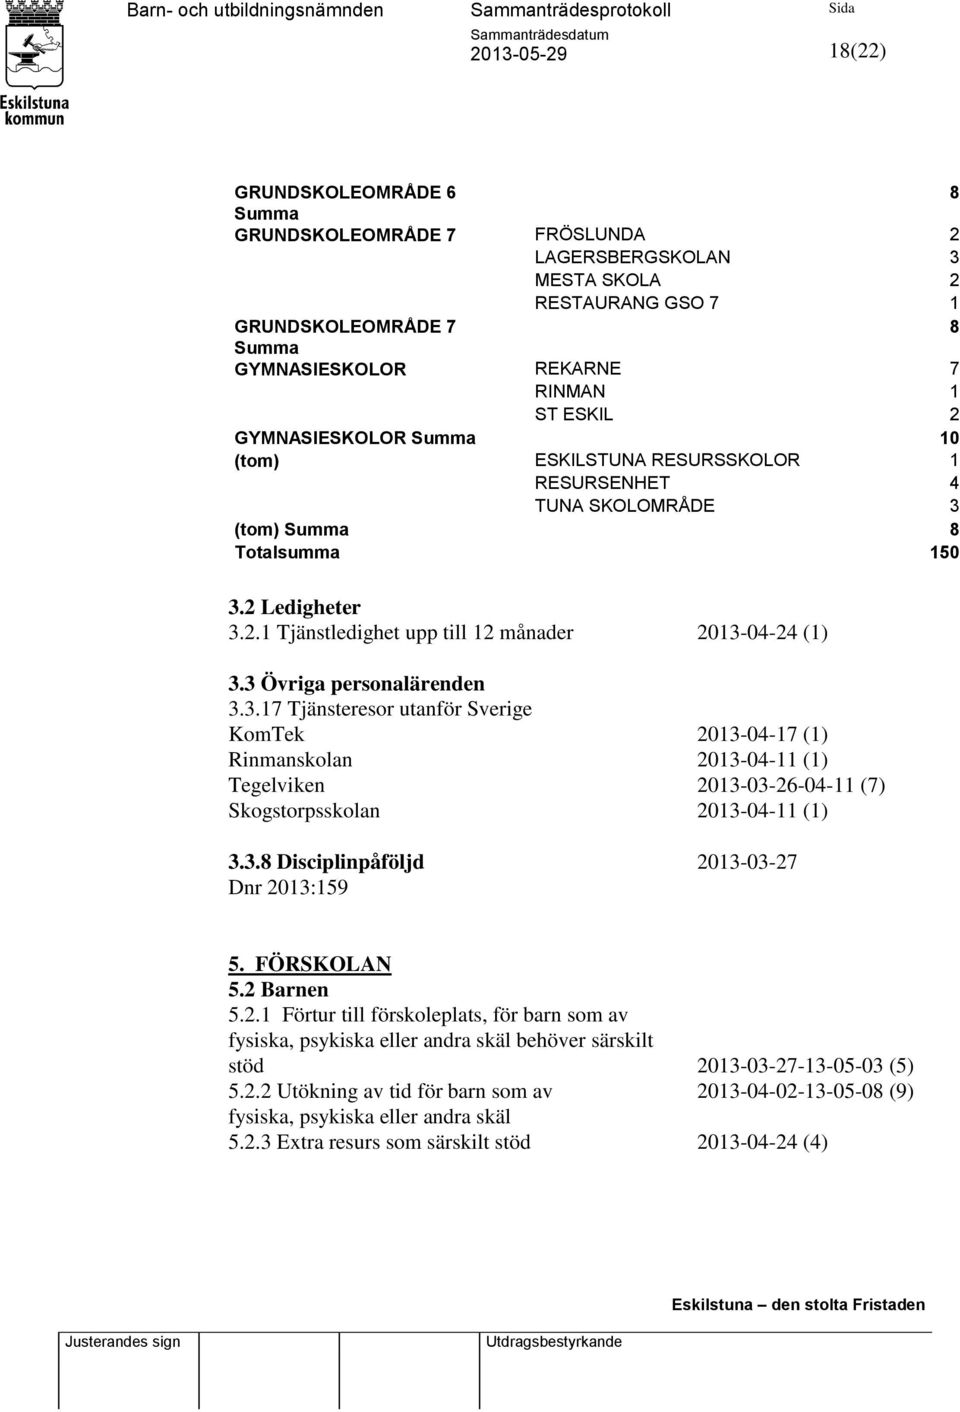 3 Övriga personalärenden 3.3.17 Tjänsteresor utanför Sverige KomTek 2013-04-17 (1) Rinmanskolan 2013-04-11 (1) Tegelviken 2013-03-26-04-11 (7) Skogstorpsskolan 2013-04-11 (1) 3.3.8 Disciplinpåföljd 2013-03-27 Dnr 2013:159 5.